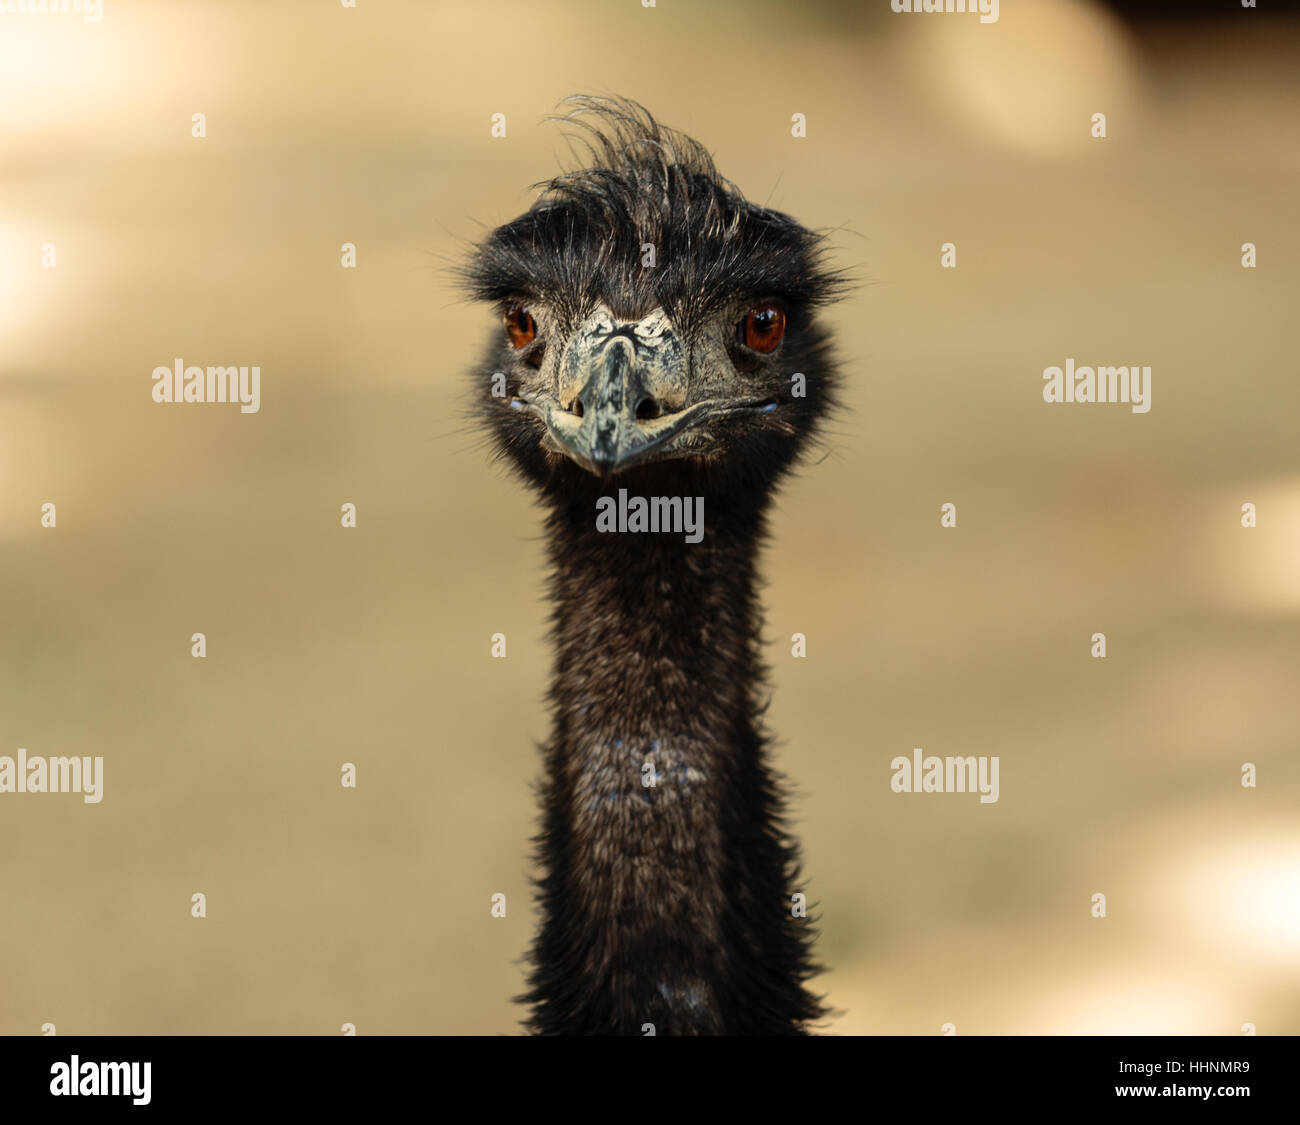 Eine Nahaufnahme der Porträt von einem emu direkt in die Kamera schauen Stockfoto